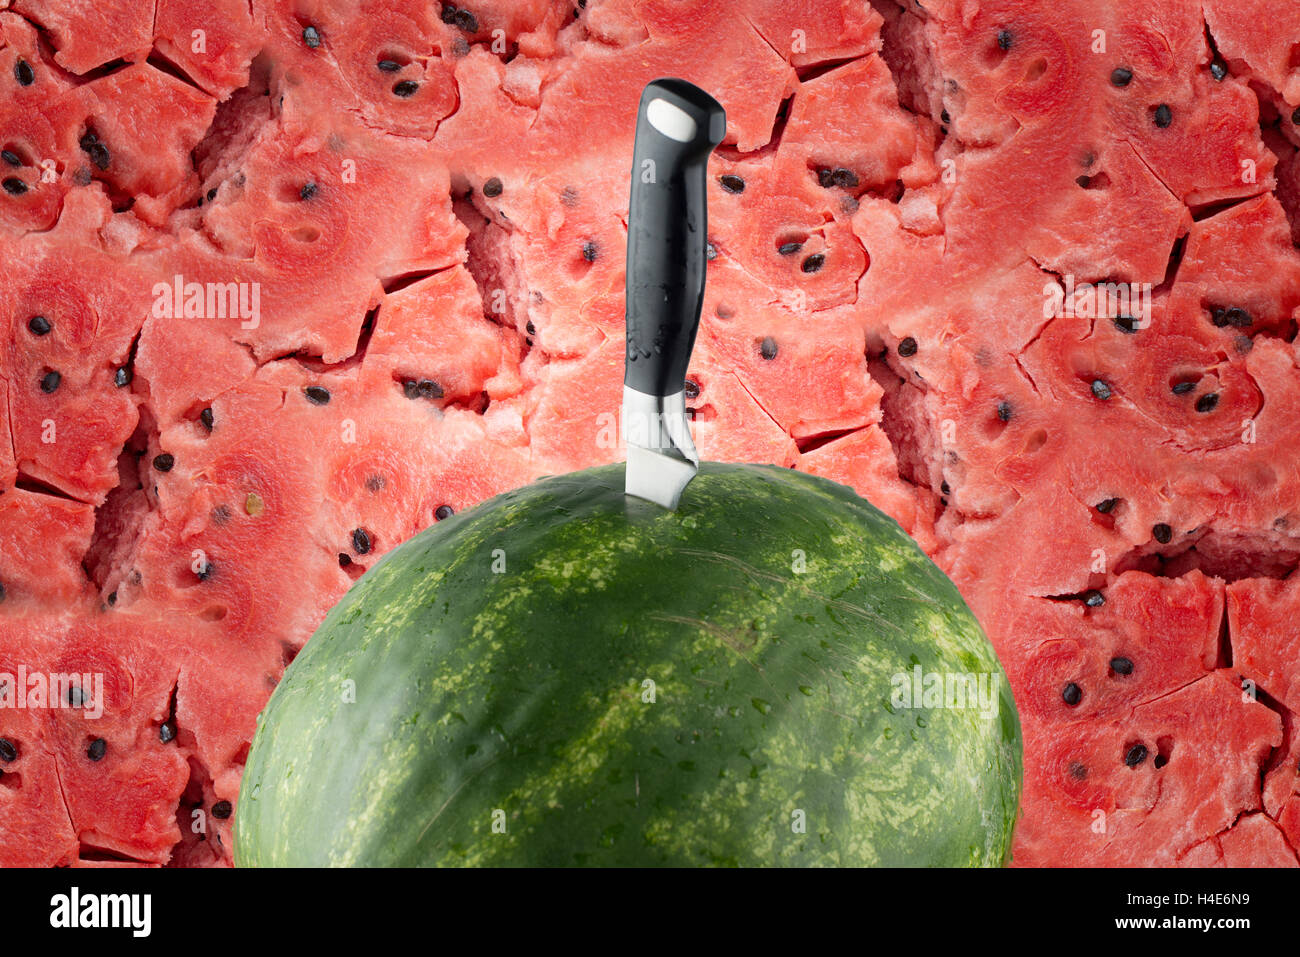 Abgelagertem Wassermelone mit Messer und rotem Fleisch Hintergrund Stockfoto